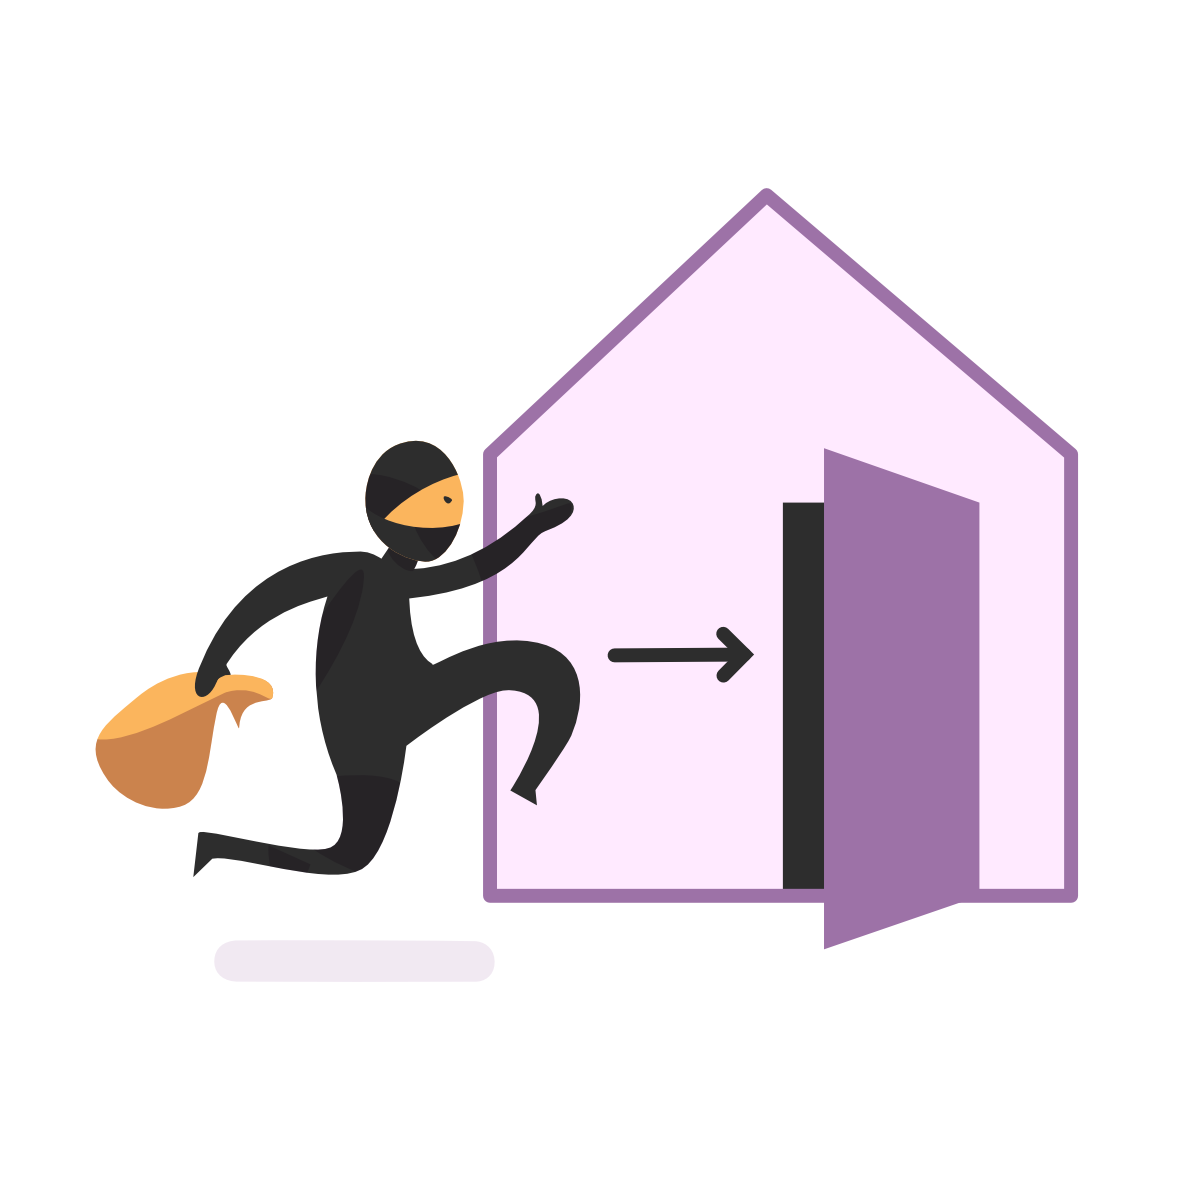 Imagen de una persona que quiere entrar en una casa sigilosamente. Va vestida íntegramente de negro, con el pelo y la cara tapados y lleva un saco en la mano.